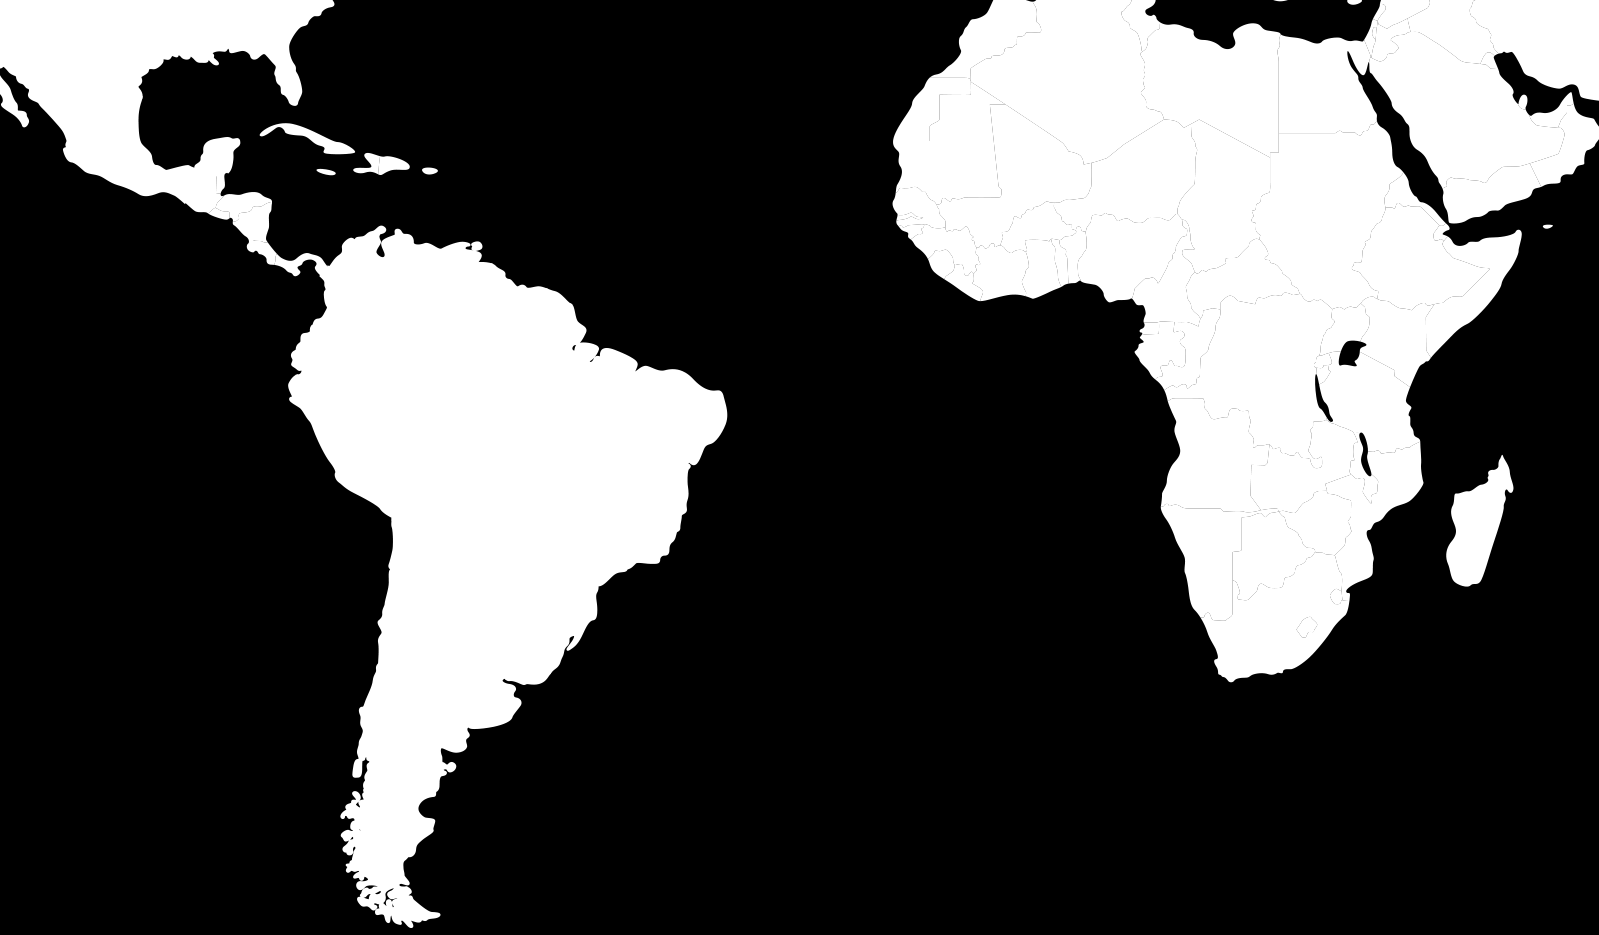 GRUPO CONTAX Operação em 4 países: Brasil, Colômbia, Argentina e Peru Principais serviços: Atendimento, Cobrança, Televendas, Retenção, Trade Marketing, Tecnologia da Informação e Comunicação e Back